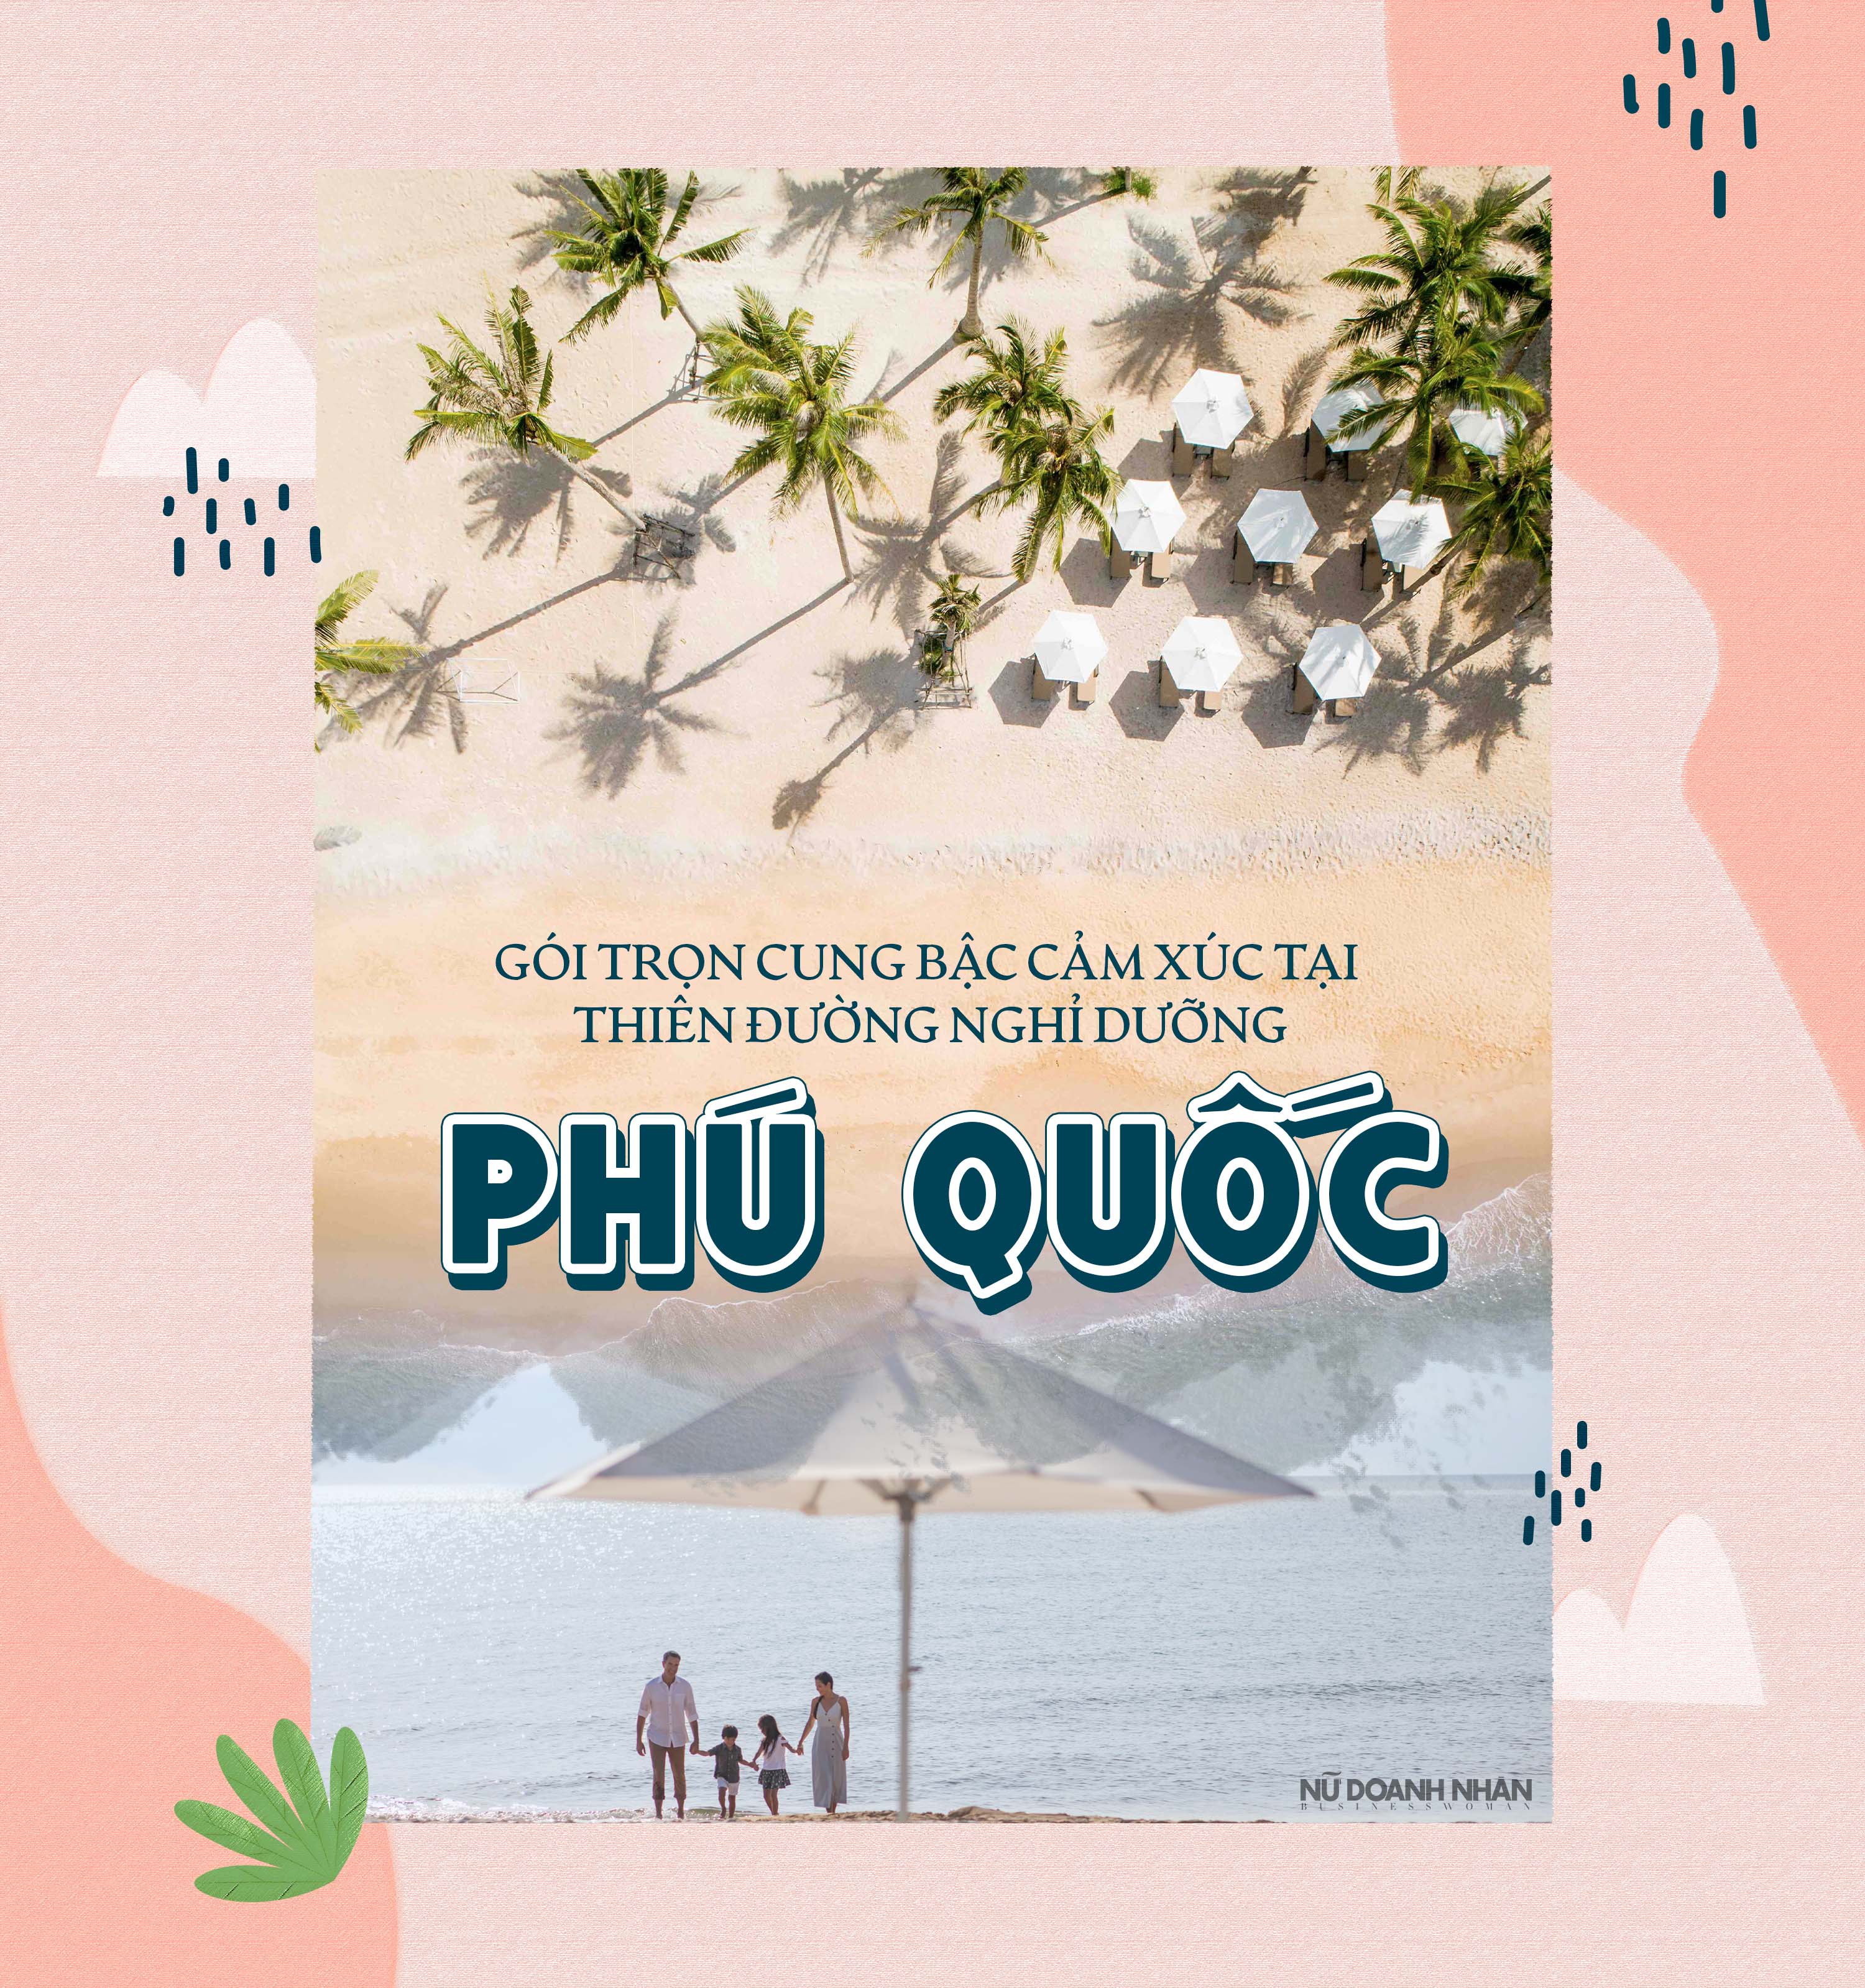 khu nghỉ dưỡng Intercontinental Phu Quoc